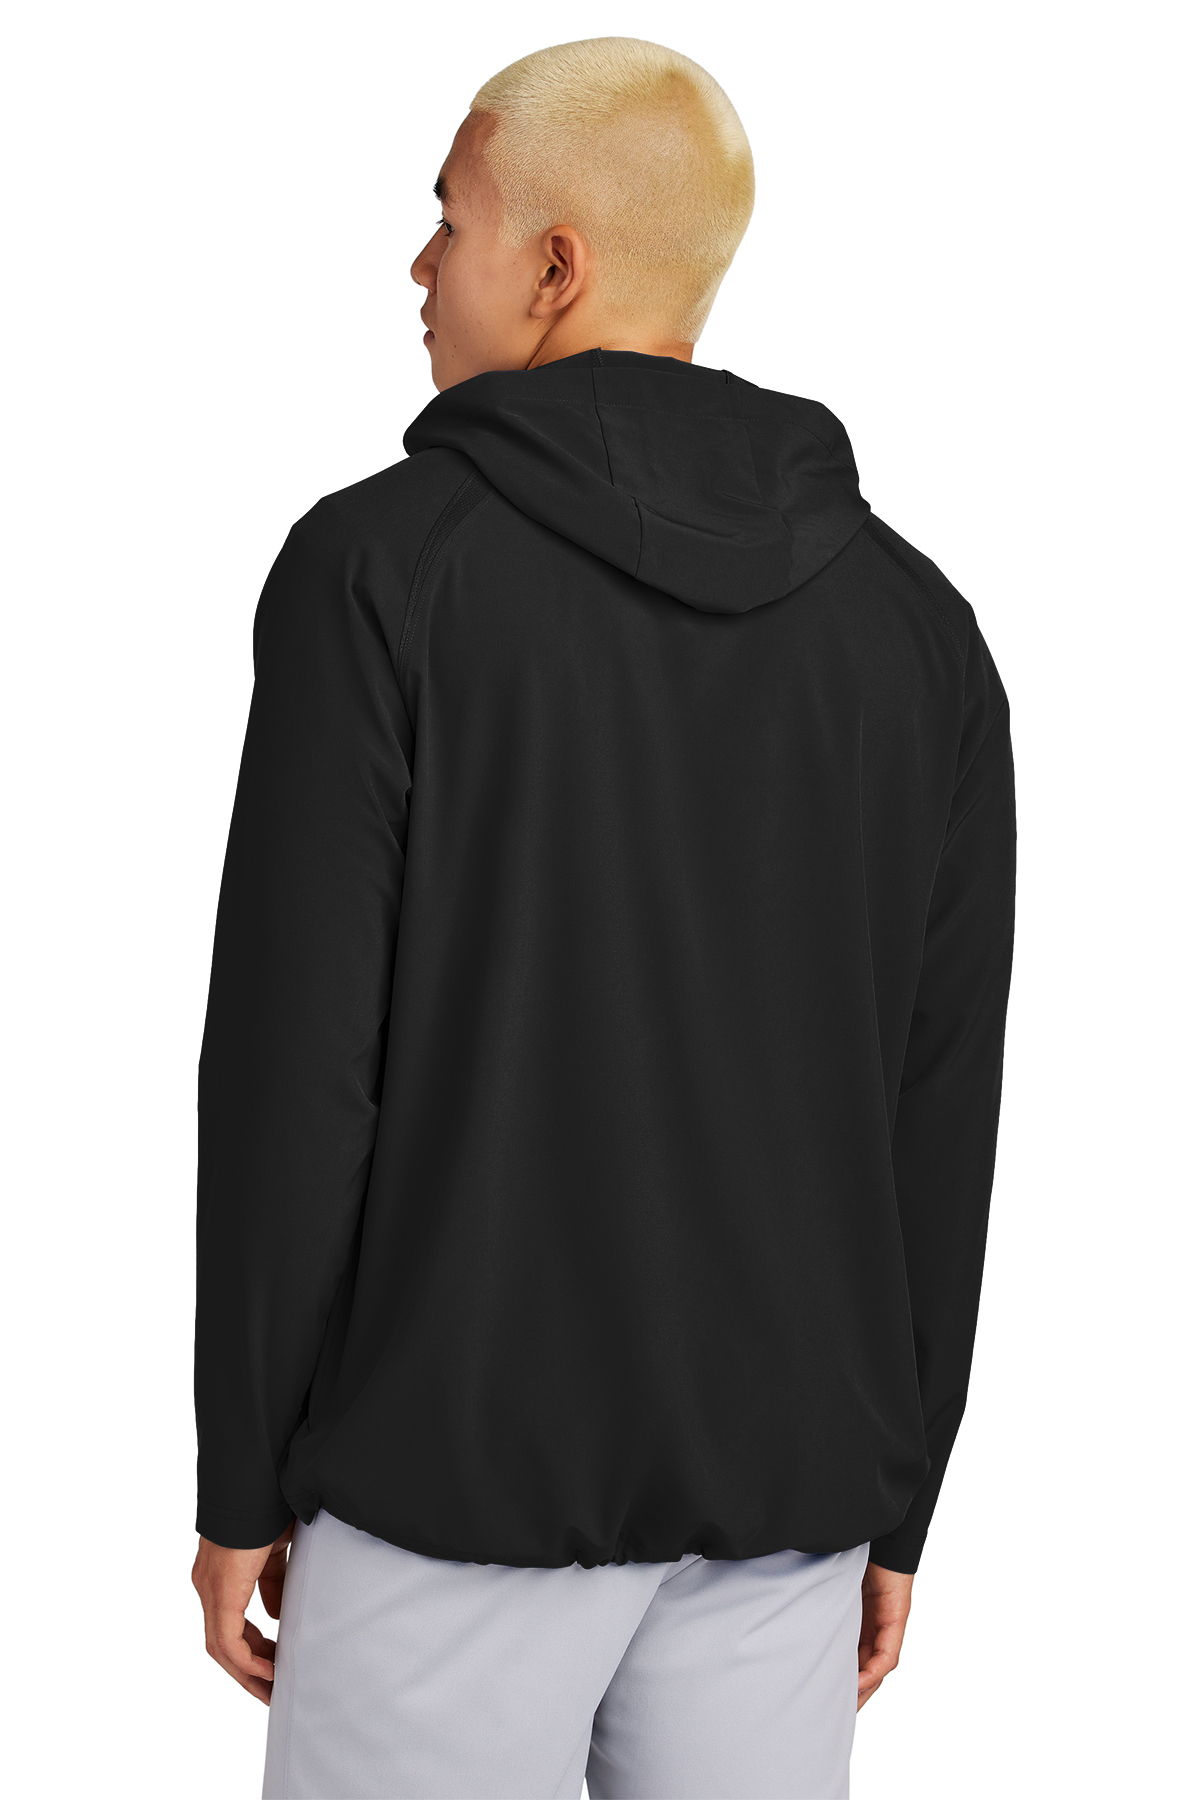 1/2-Zip Sport-Tek Repeat Sport-Tek | Jacket Product | Long Sleeve Hooded